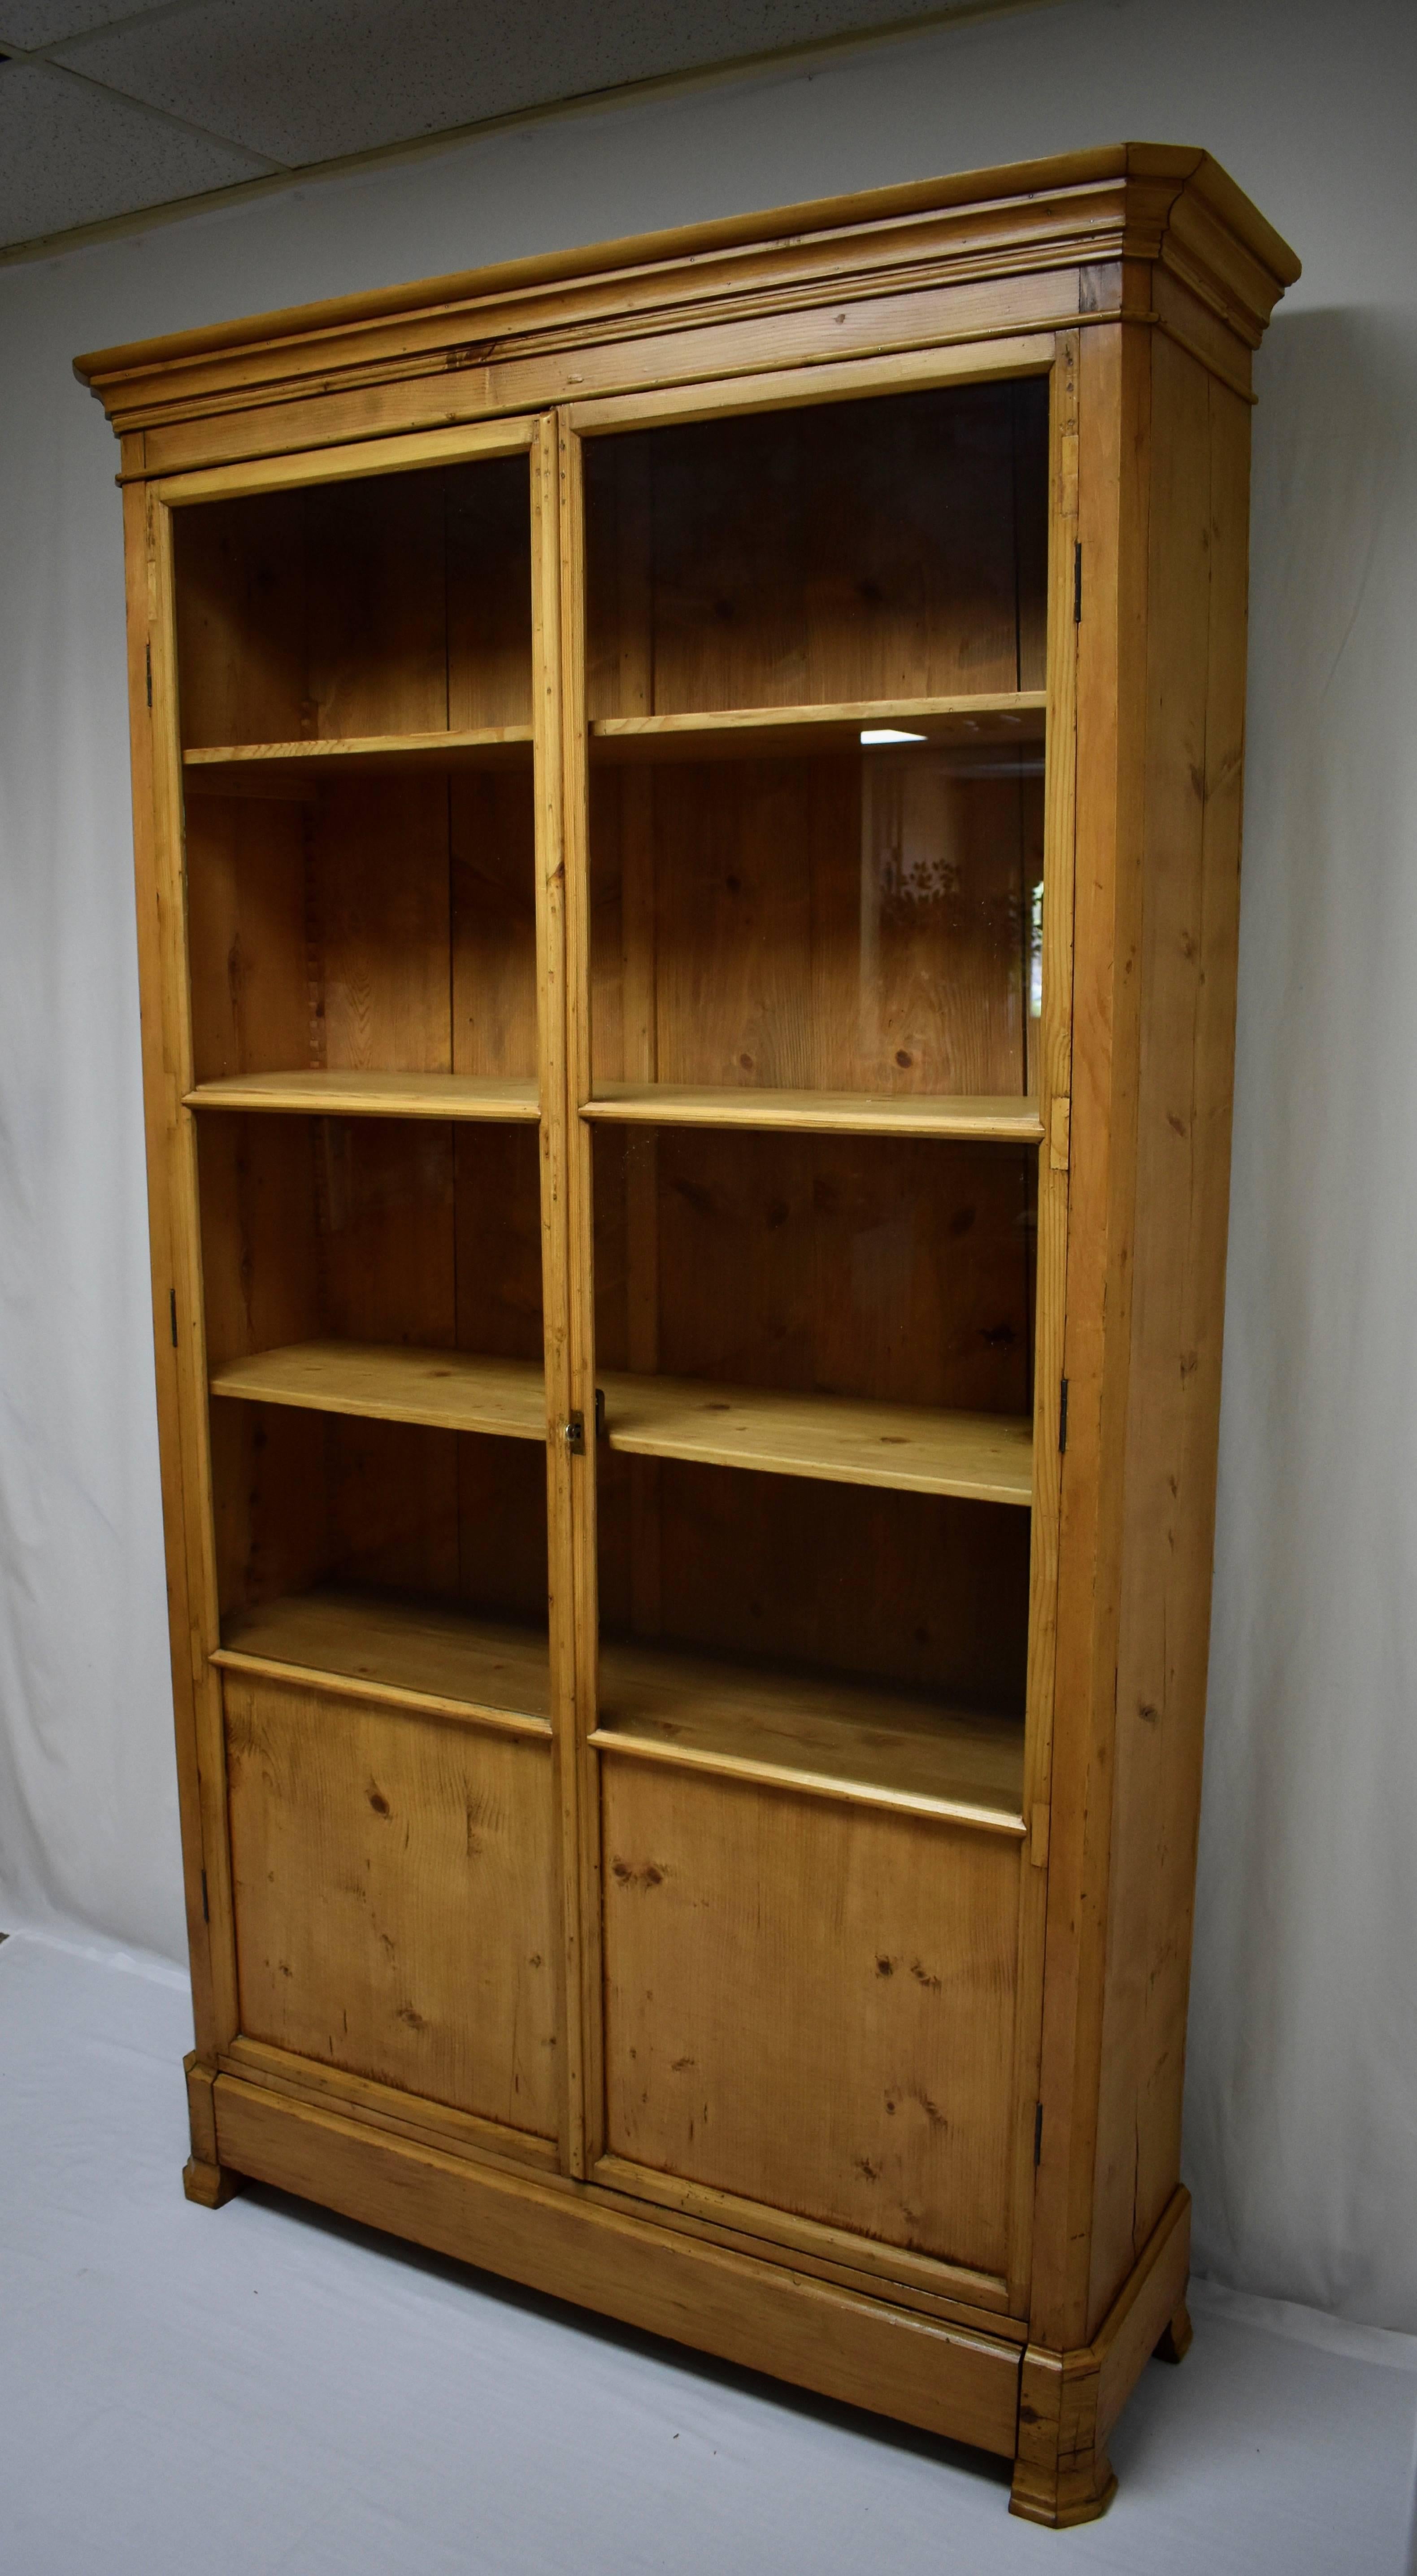 Polished French Pine Glazed Bookcase